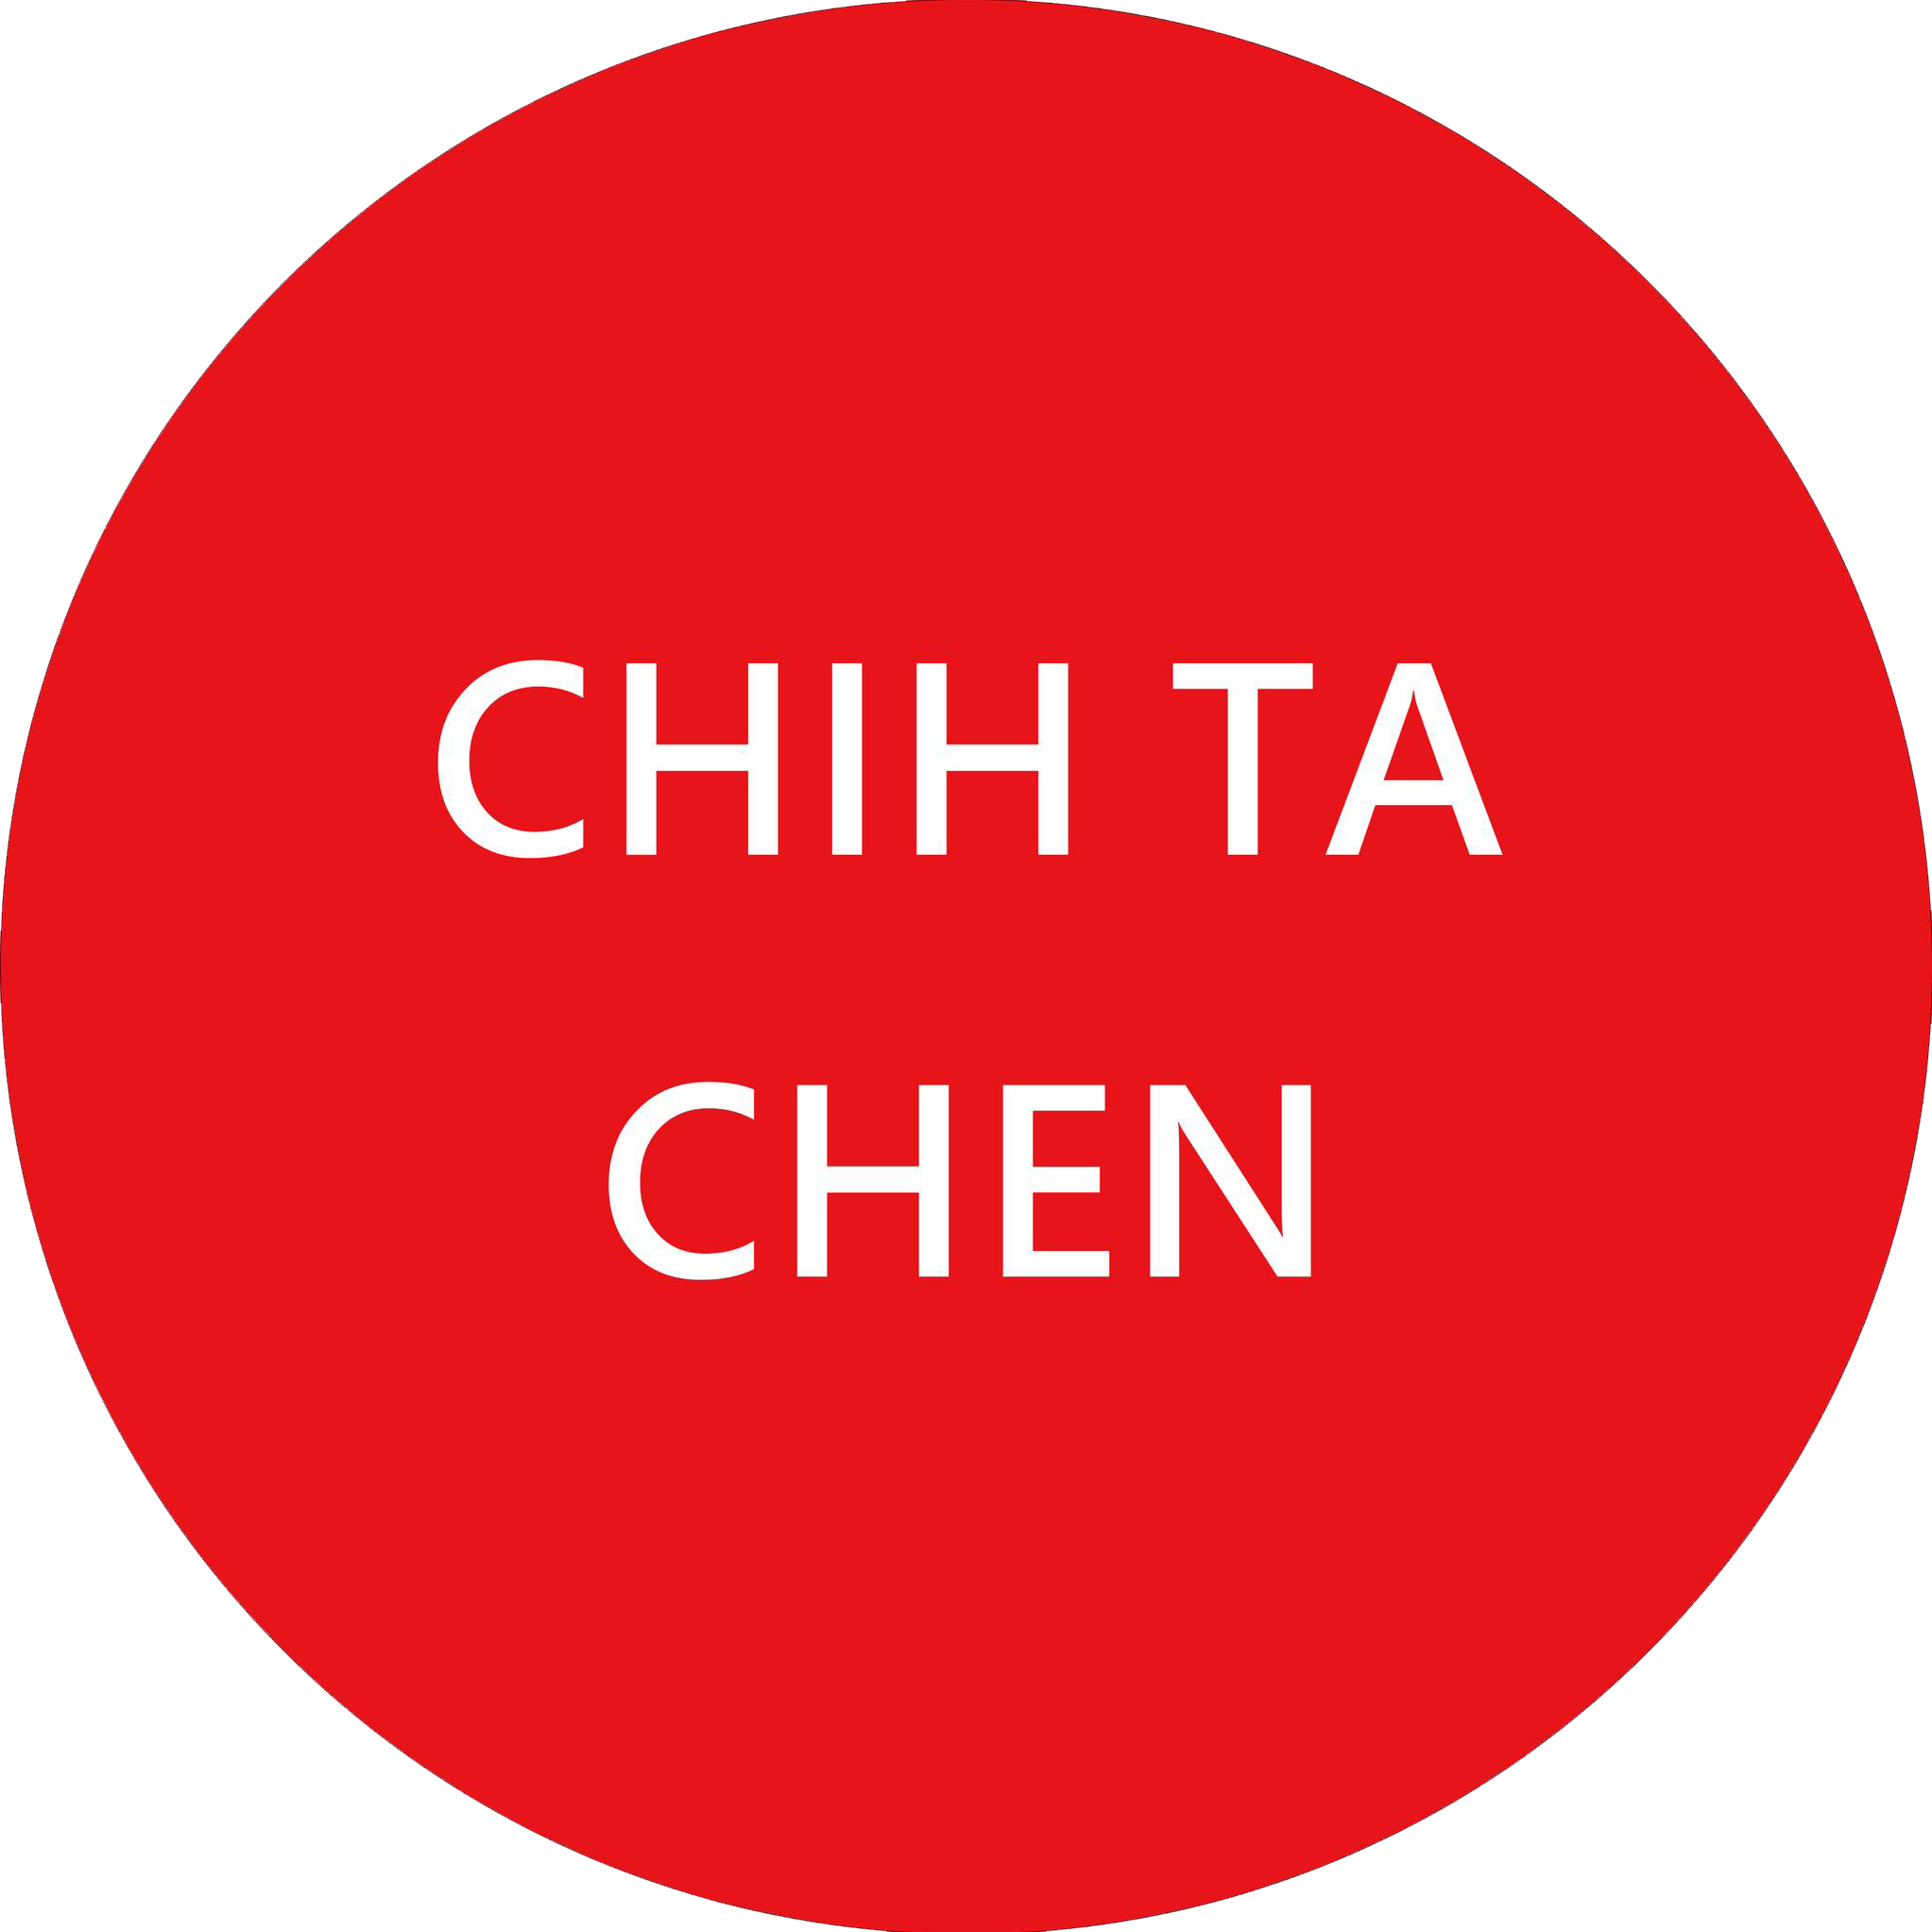 CHIH TA CHEN